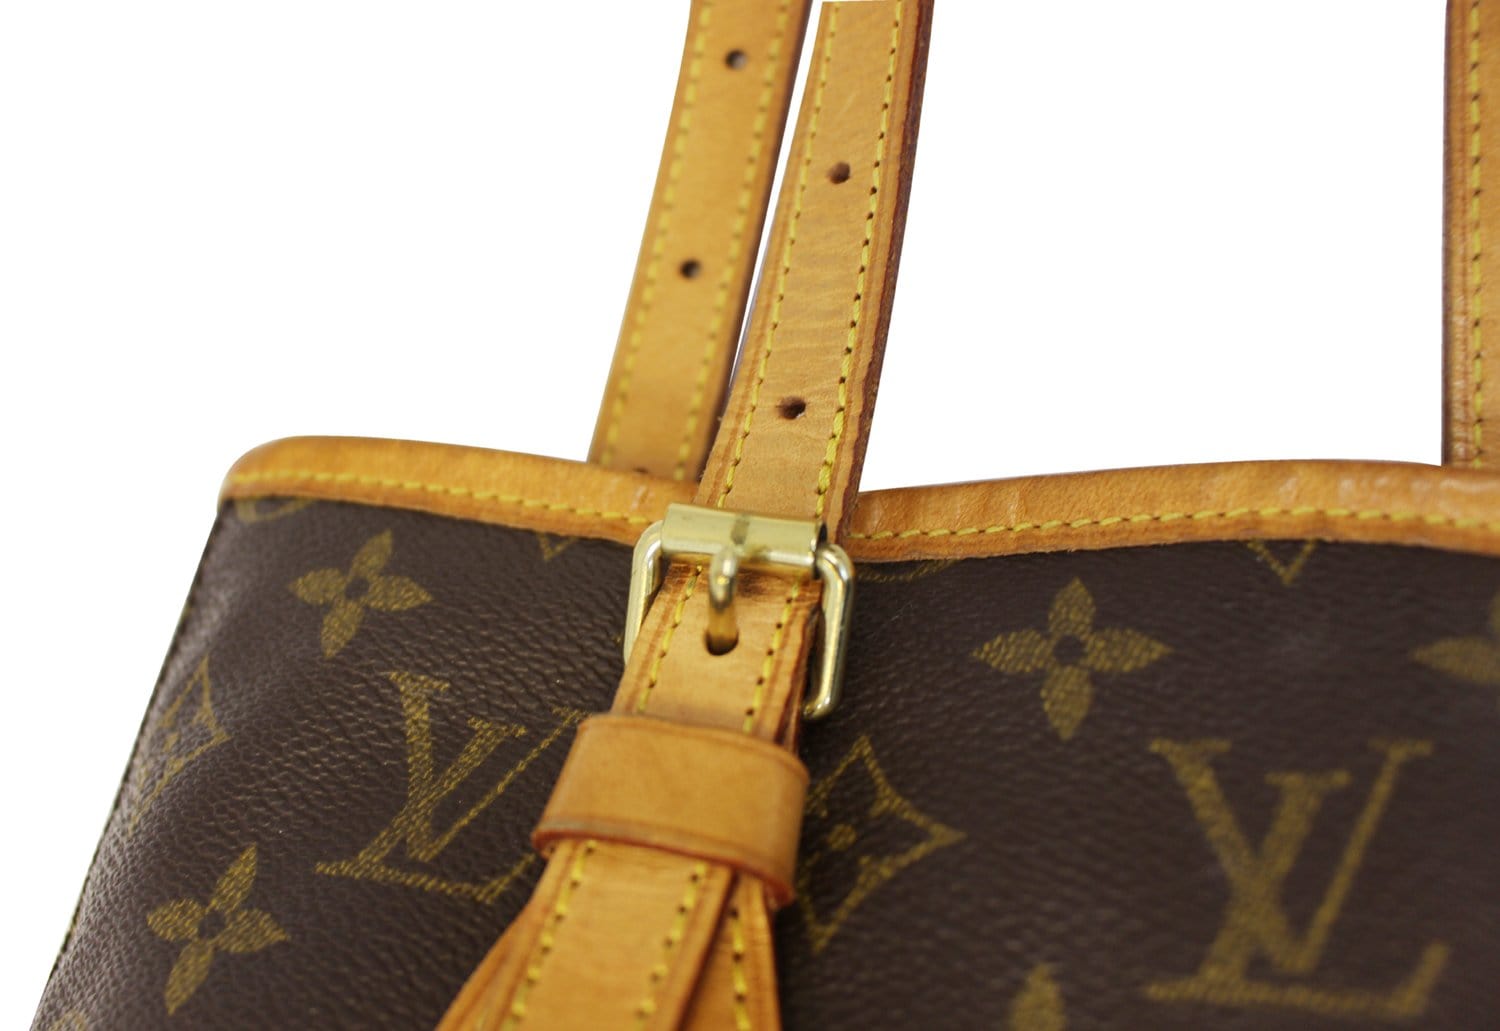 M20352 Louis Vuitton Monogram Lace Bucket PM Bag